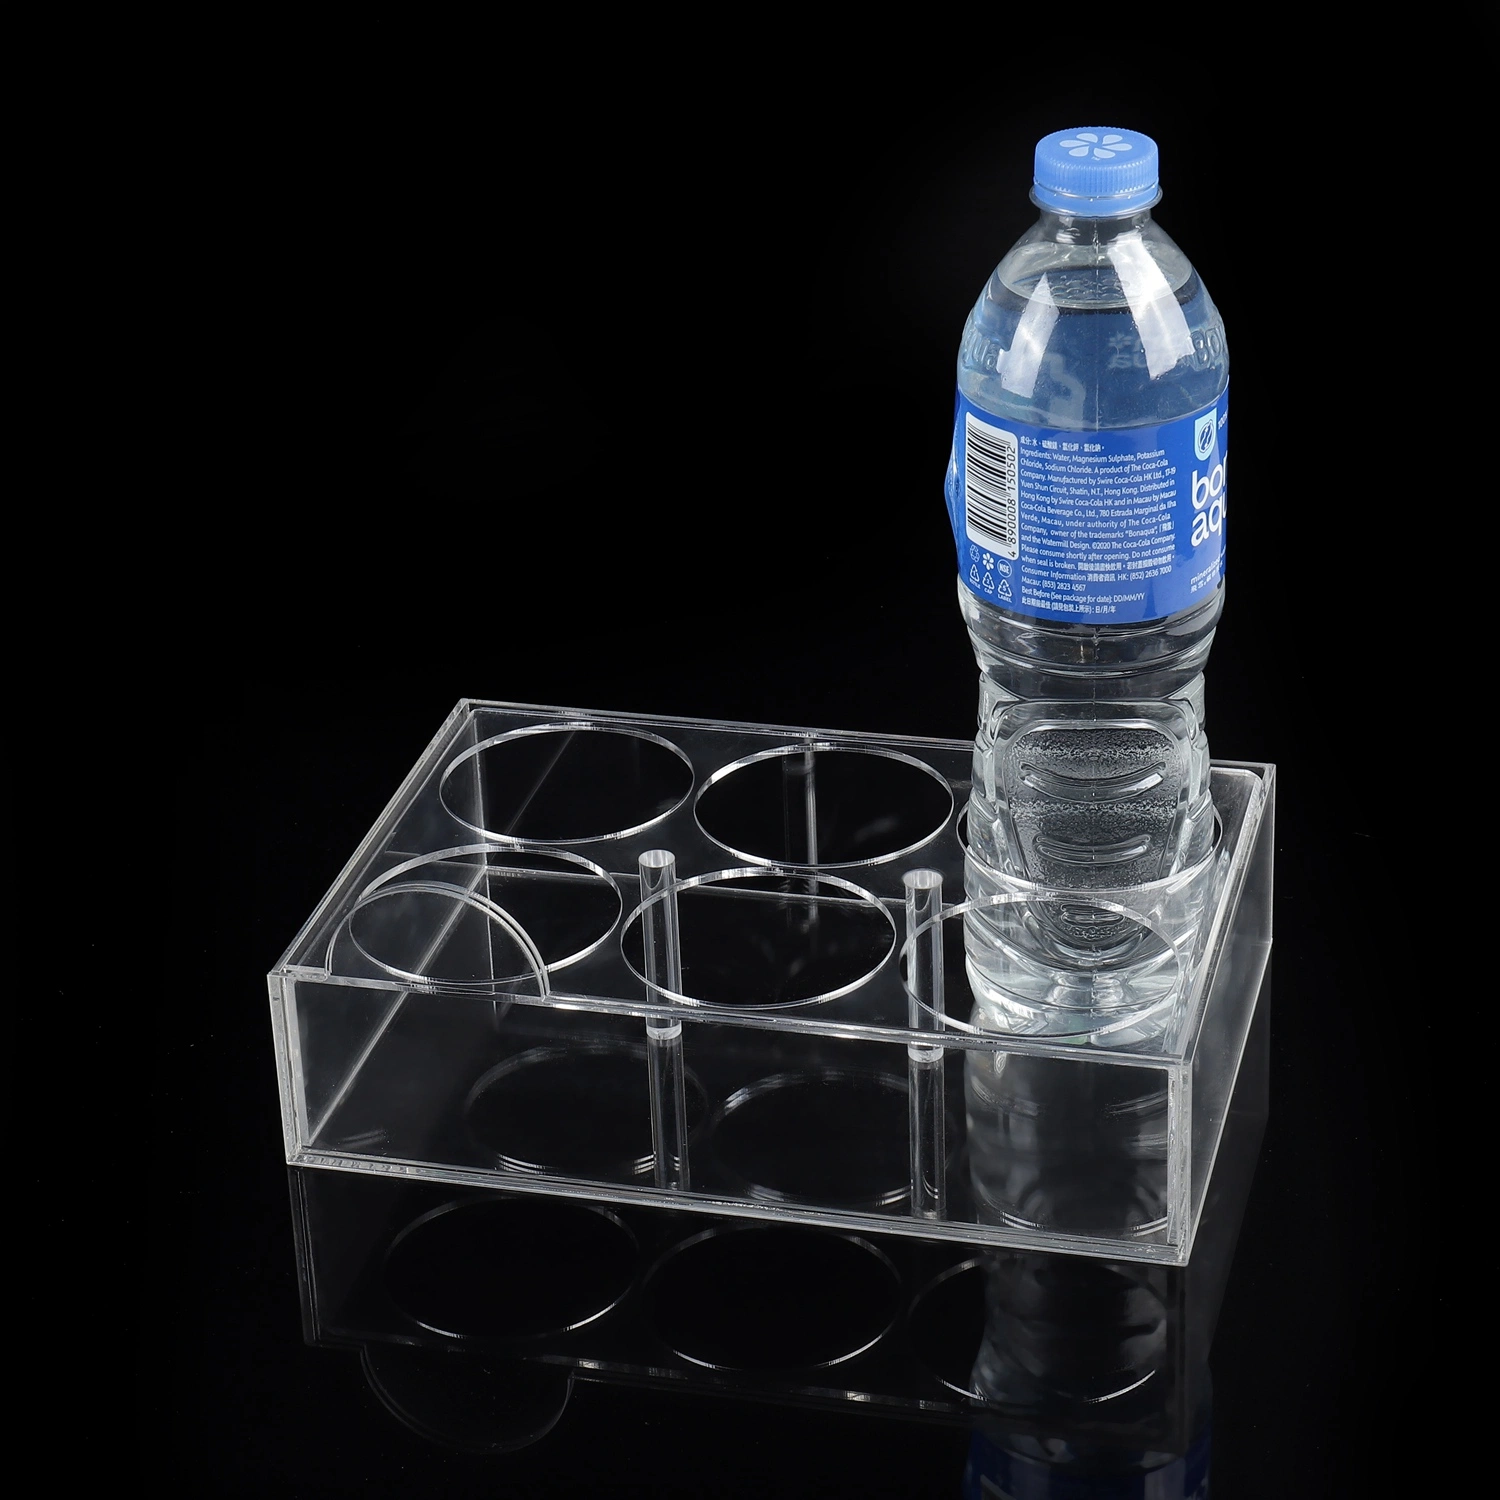 صندوق شاشة عرض بلاستيك متعدد الوظائف سعة 6 آبار حامل أكريليك بالنسبة إلى زجاجات المشروبات